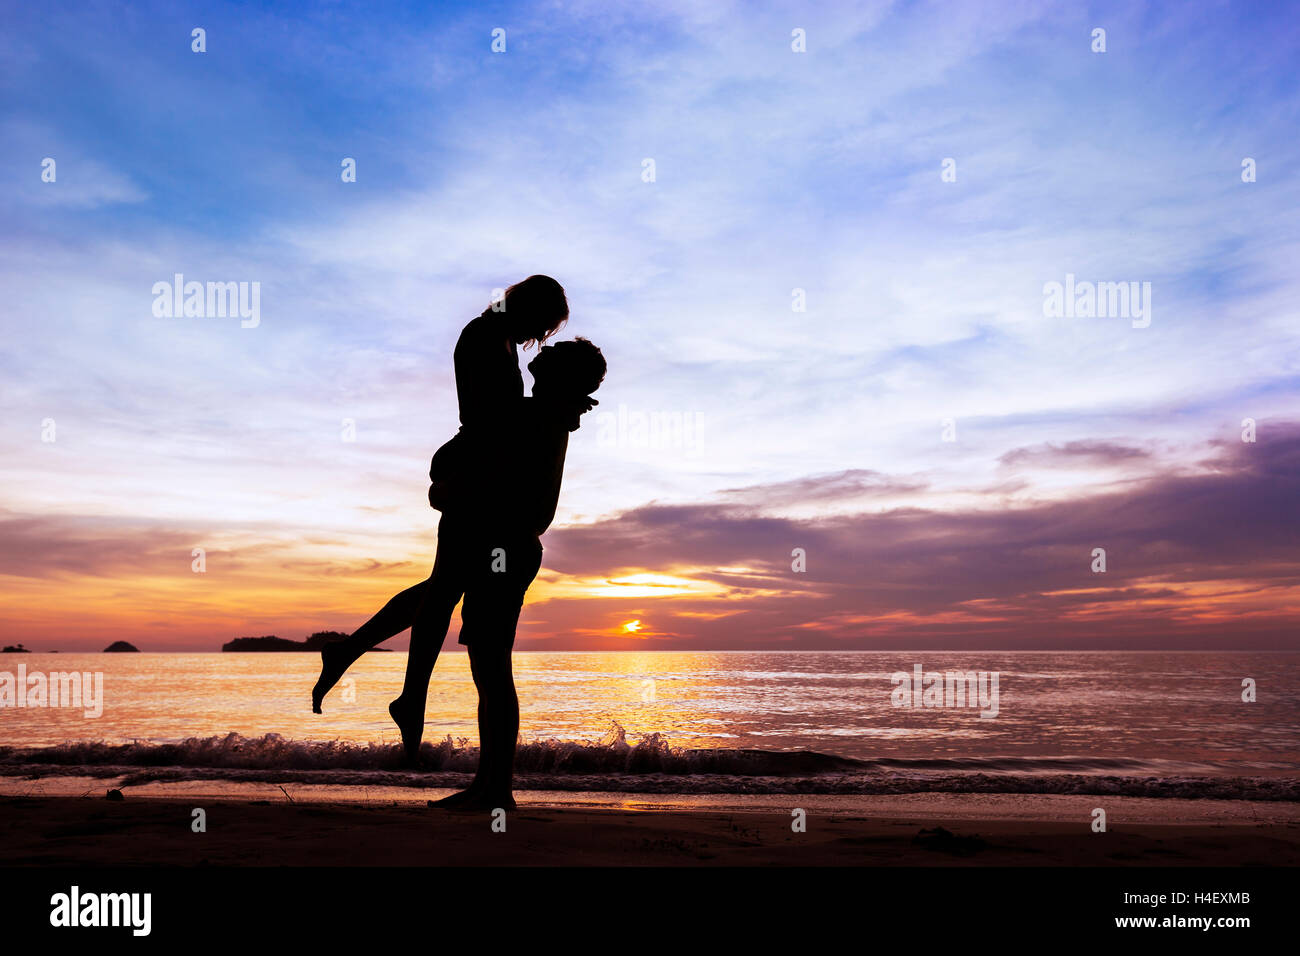 Silhouette d'heureux couple sur Paradise beach au coucher du soleil, l'homme de prendre la jeune fille dans ses bras Banque D'Images